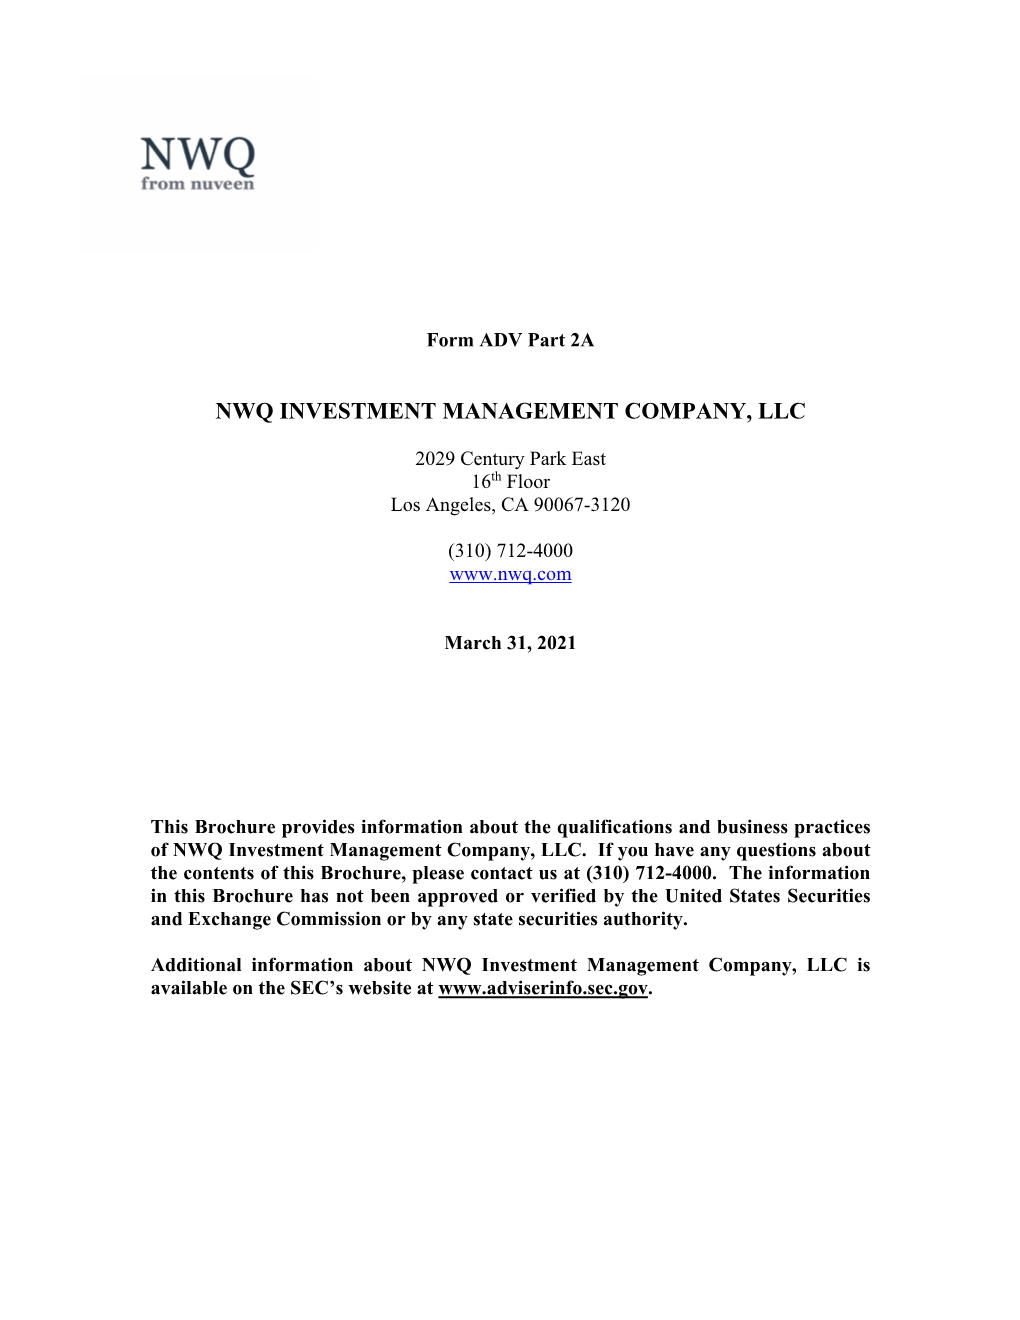 Nwq Investment Management Company, Llc